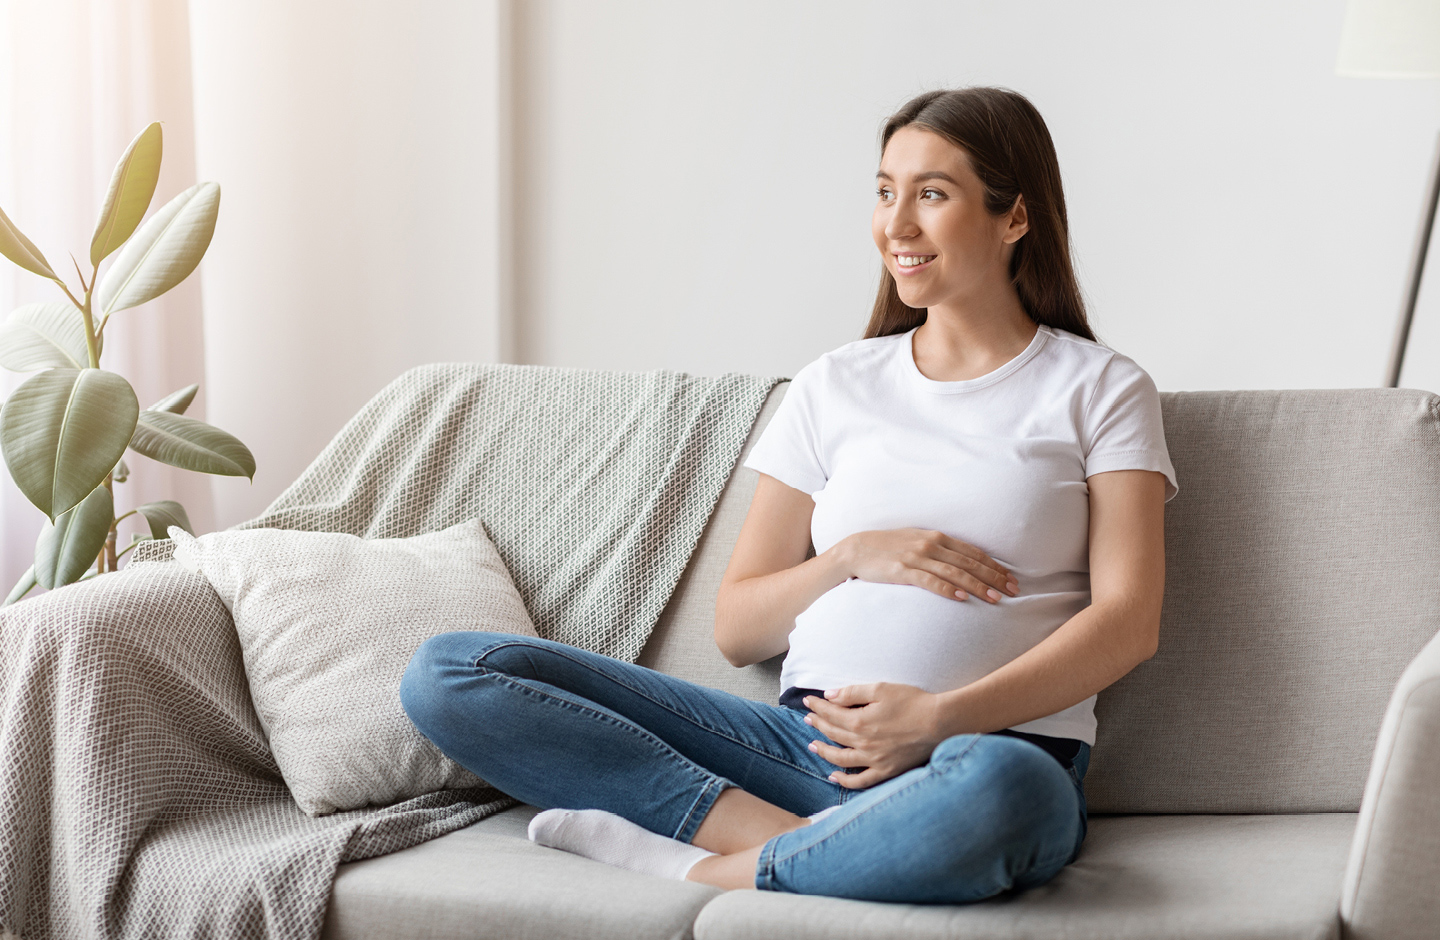 Anzeichen für die Geburt: Frau sitzt auf dem Sofa und merkt erste Senkwehen.